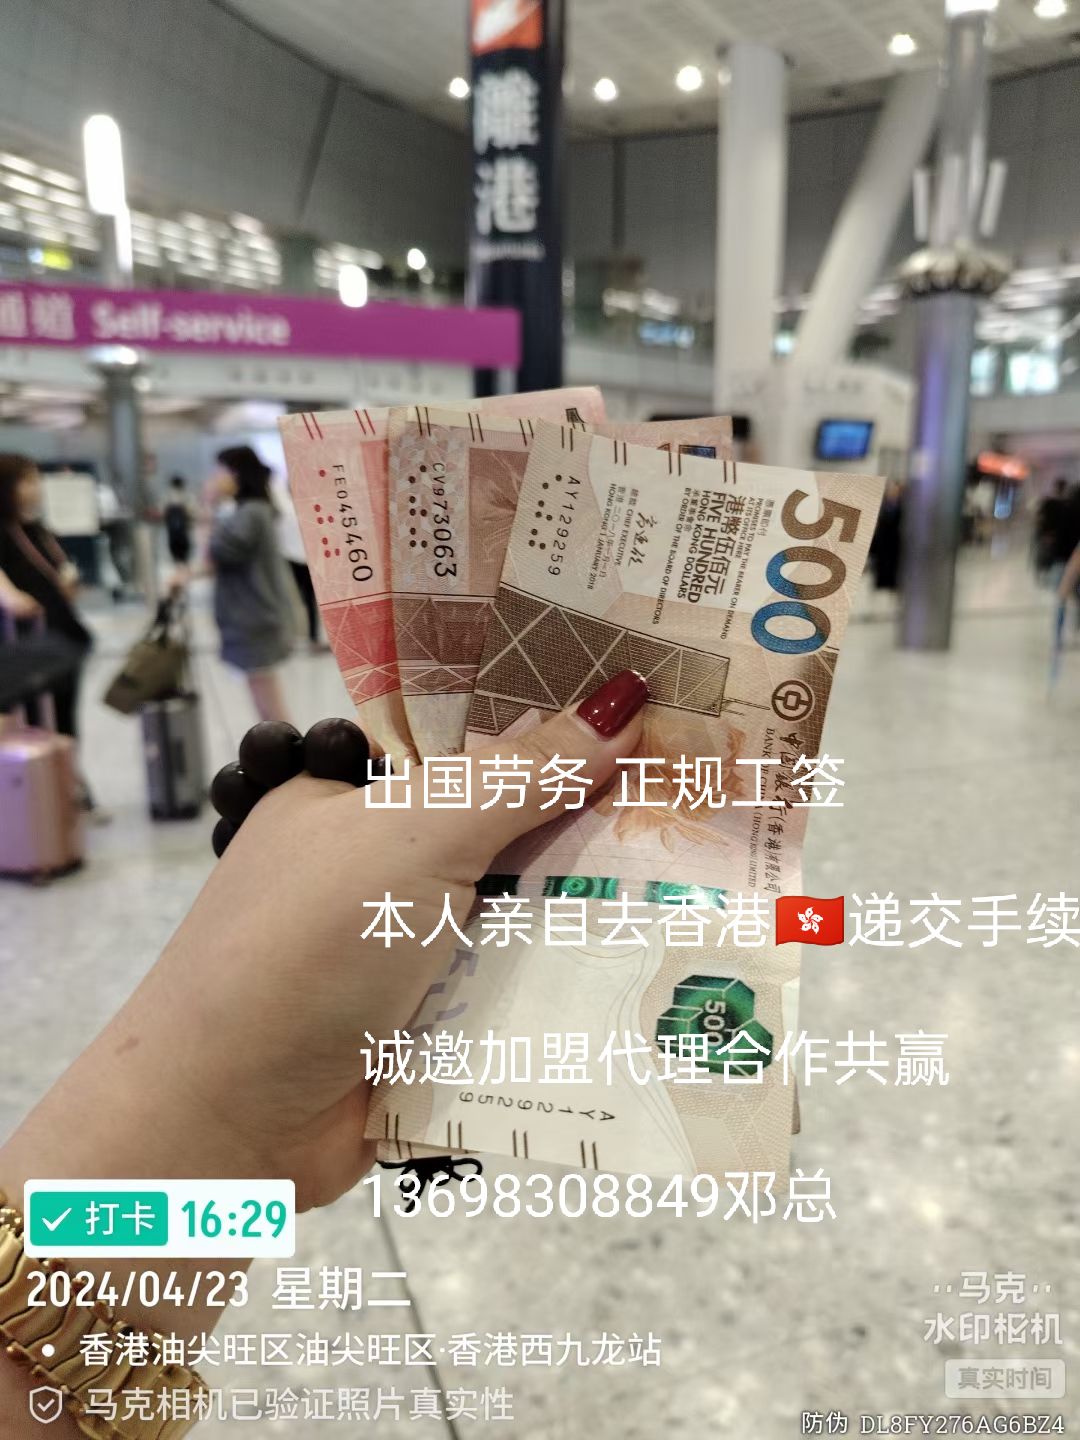 远境劳务陕西不用出国香港急招超市理货员员合法打工